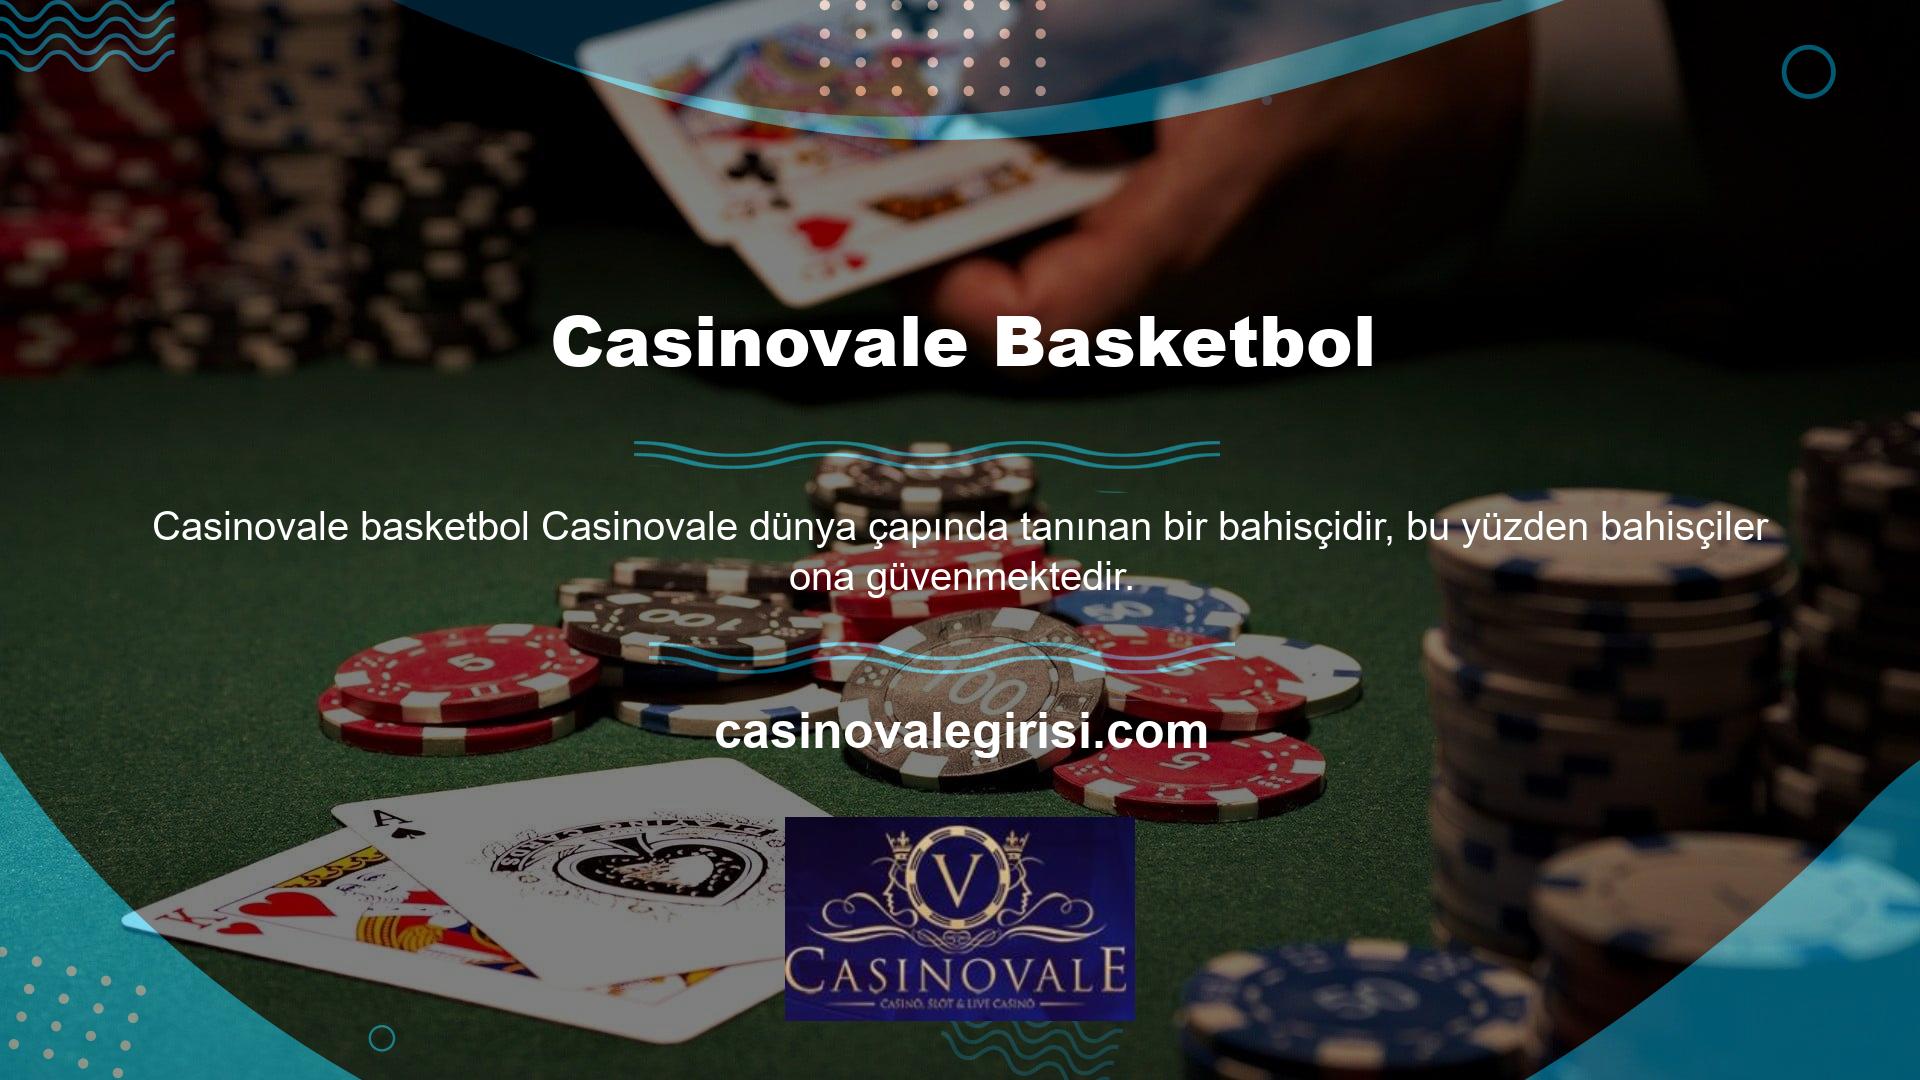 Bahisçiler Casinovale ilgisini çekiyor çünkü parayla oynamanın heyecanını seviyorlar